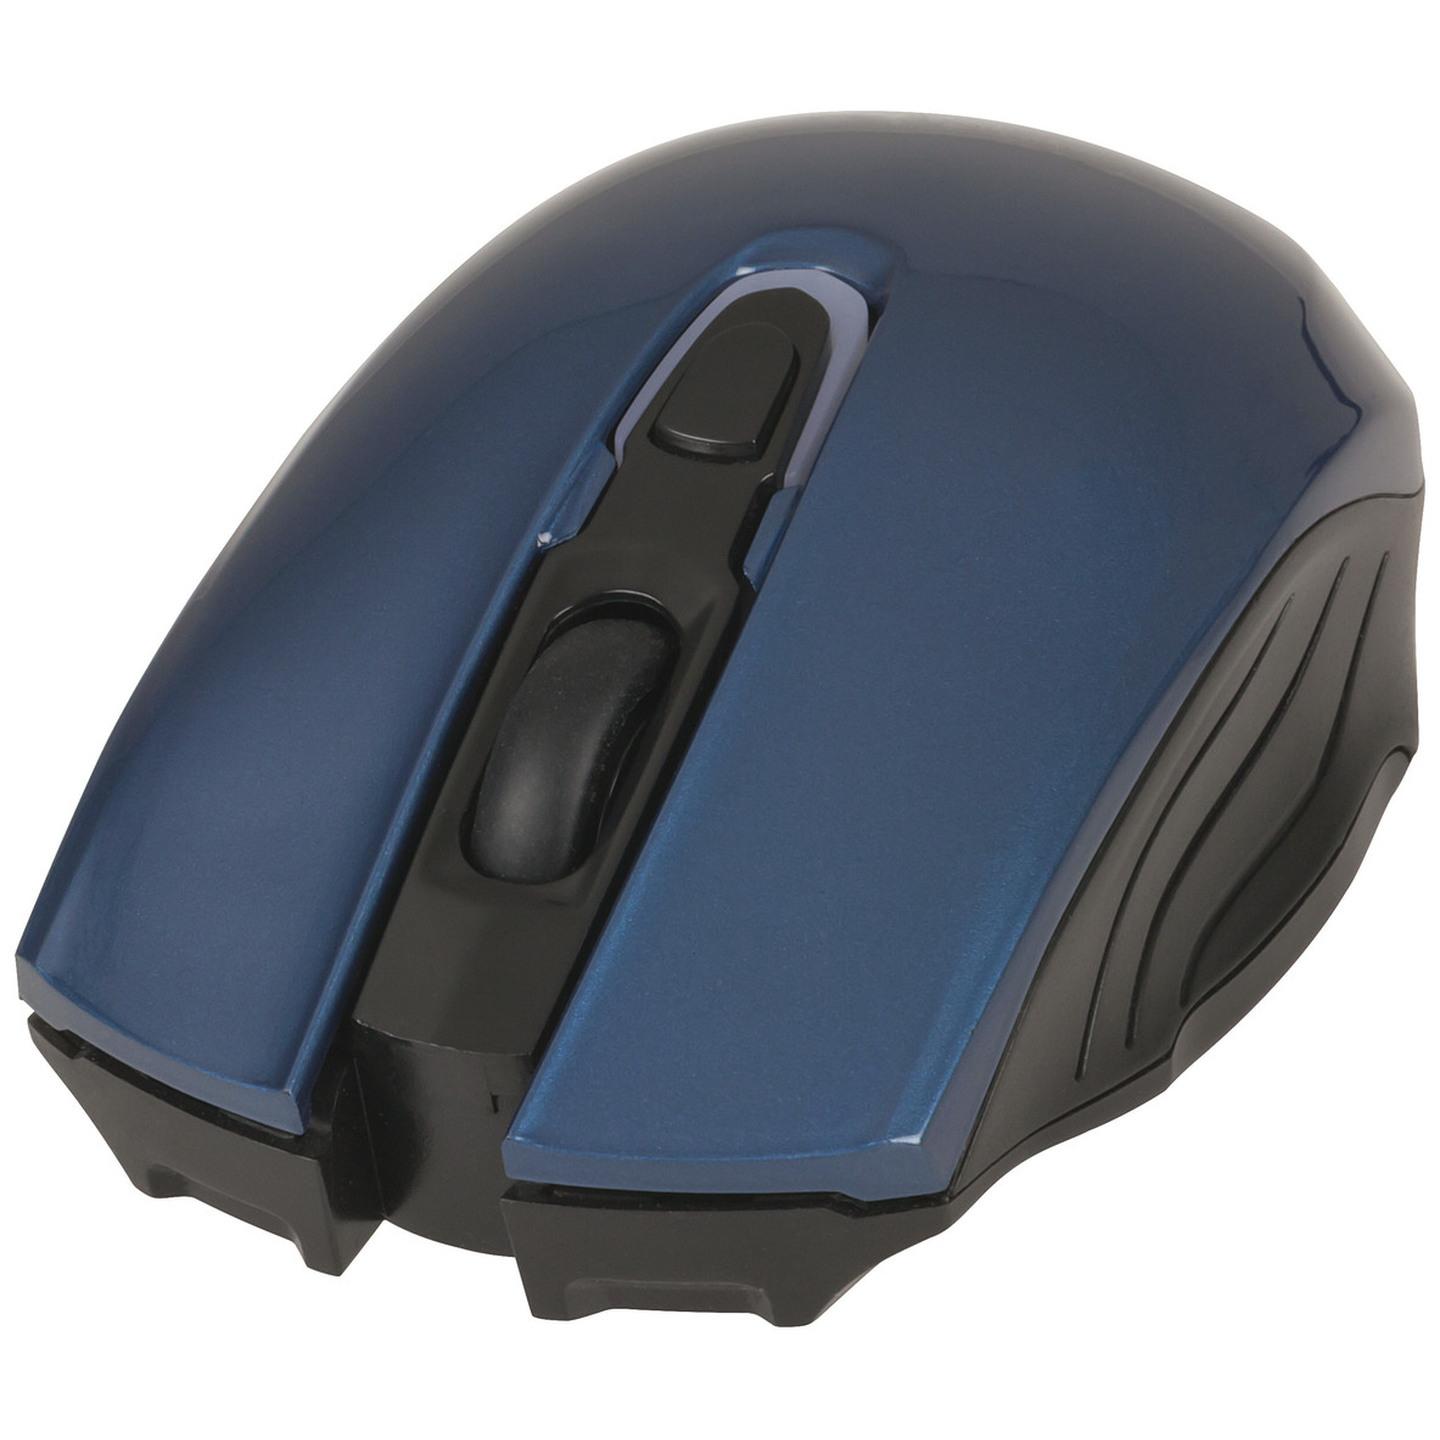 NEXTECH Bluetooth Mouse